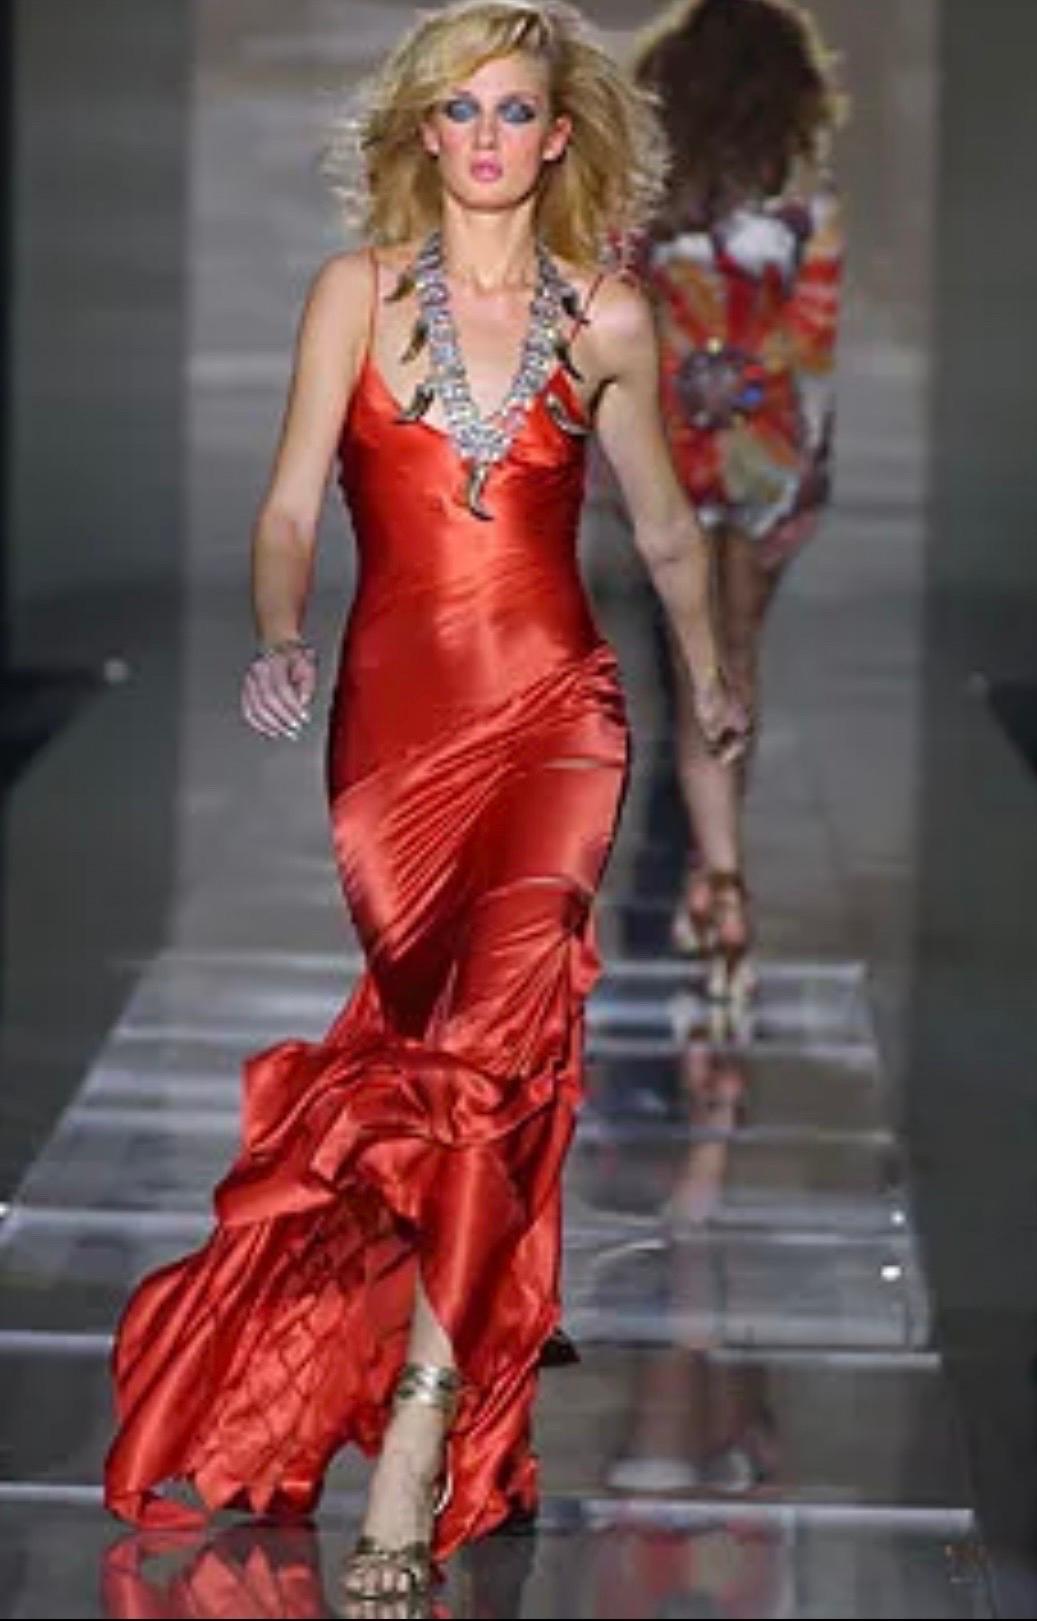 S/S 2004 Roberto Cavalli Kleid
Ähnliches Kleid in Rot wie auf dem Laufsteg
Wunderschöner grüner Seidenstoff
Dünne Schultergurte
V-Ausschnitt
Bias-Schnitt
Tailliertes Mieder mit ausgestelltem Saum
Ausgeschnittene Details in der unteren Hälfte des